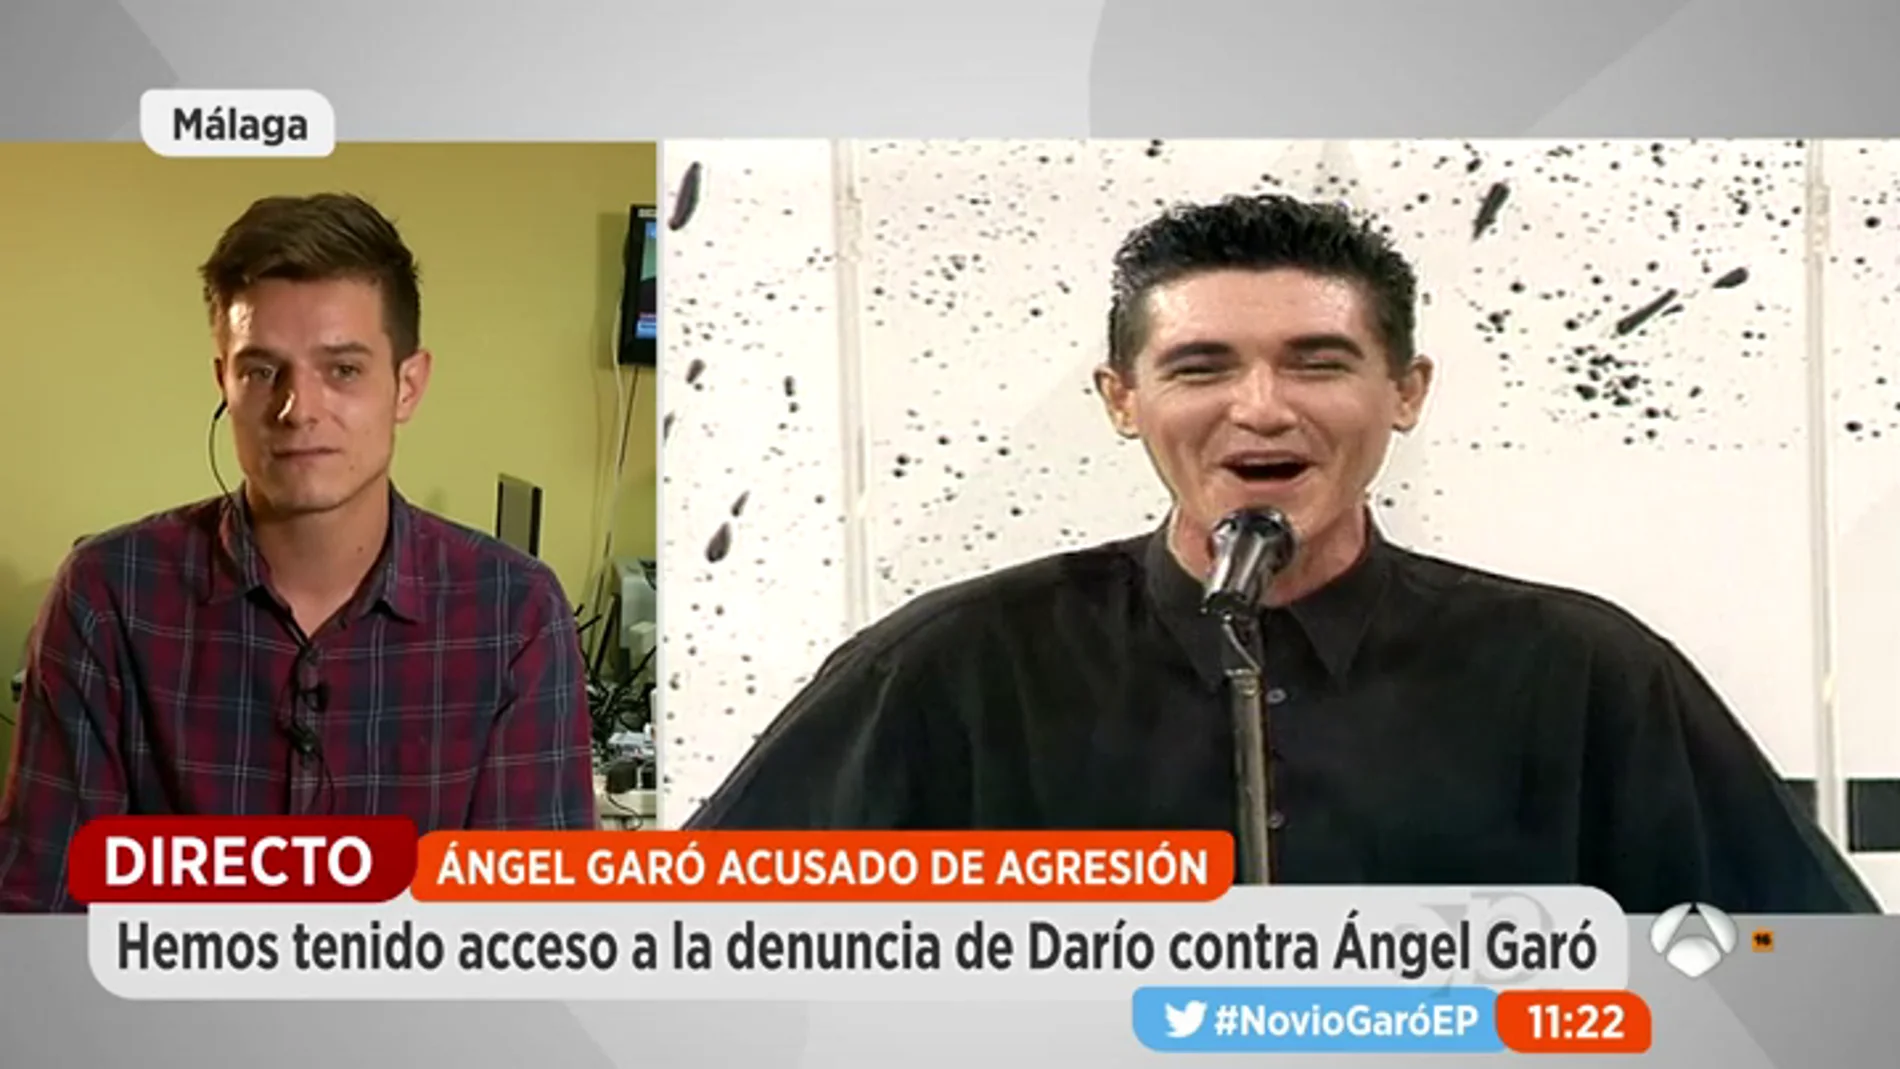 Frame 159.390608 de: Darío, la expareja de Ángel Garó: "No lo he denunciado porque le quiero"